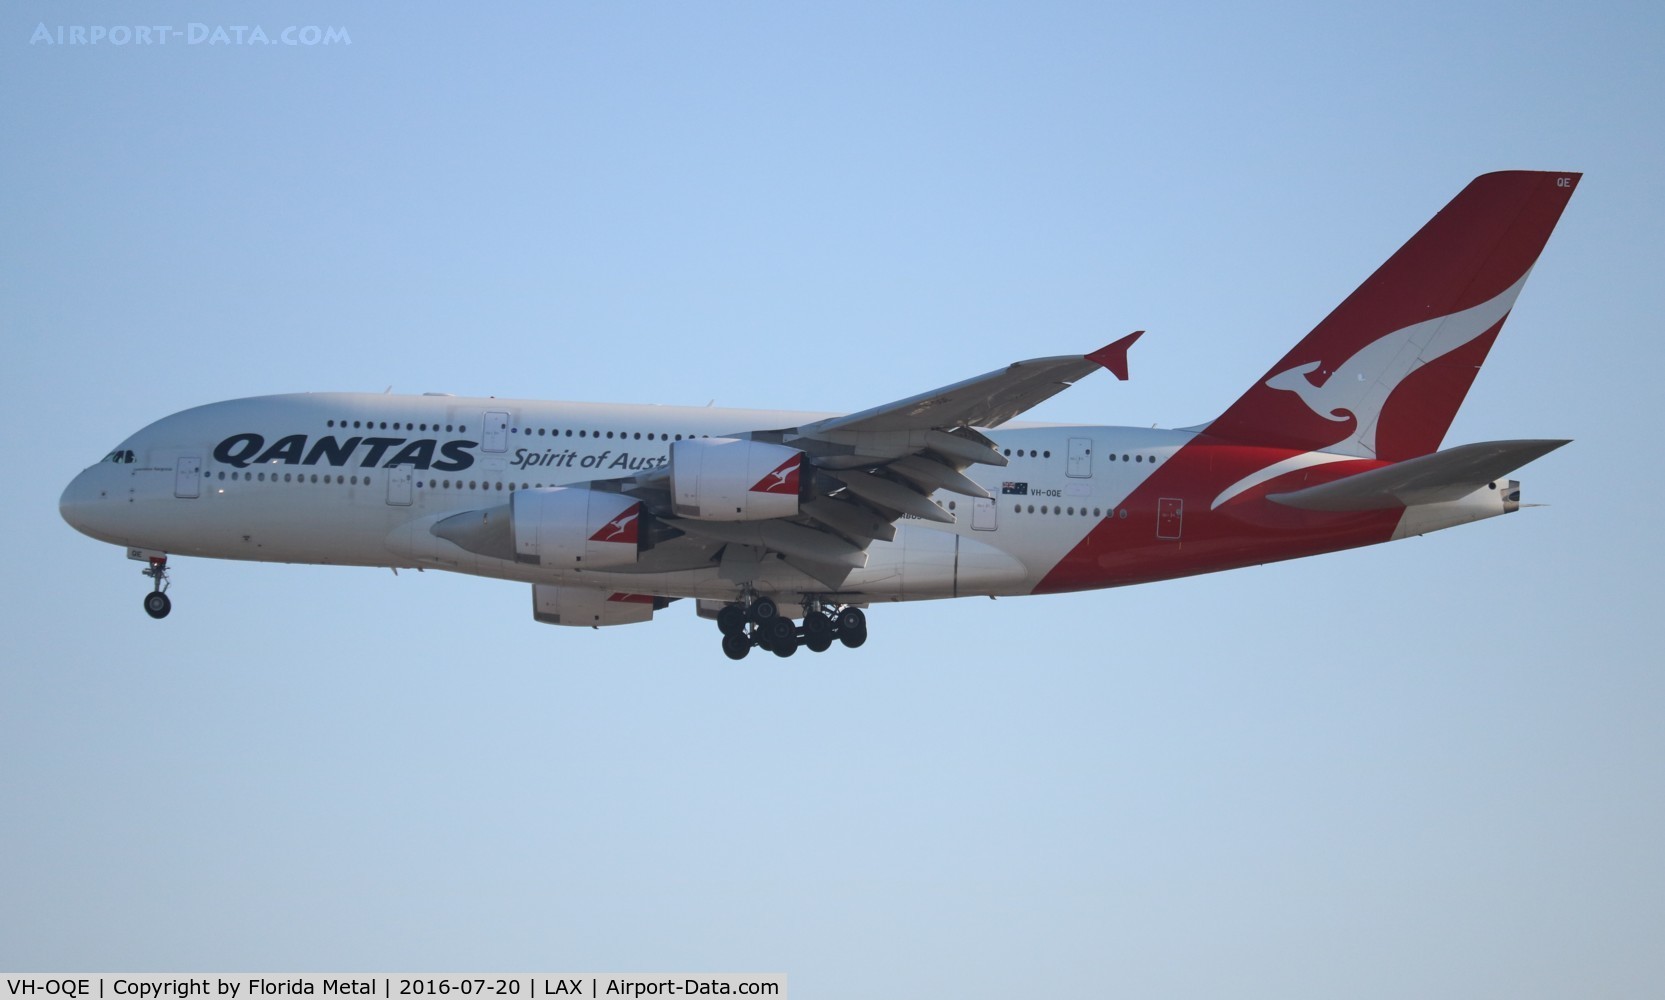 VH-OQE, 2009 Airbus A380-842 C/N 027, Qantas